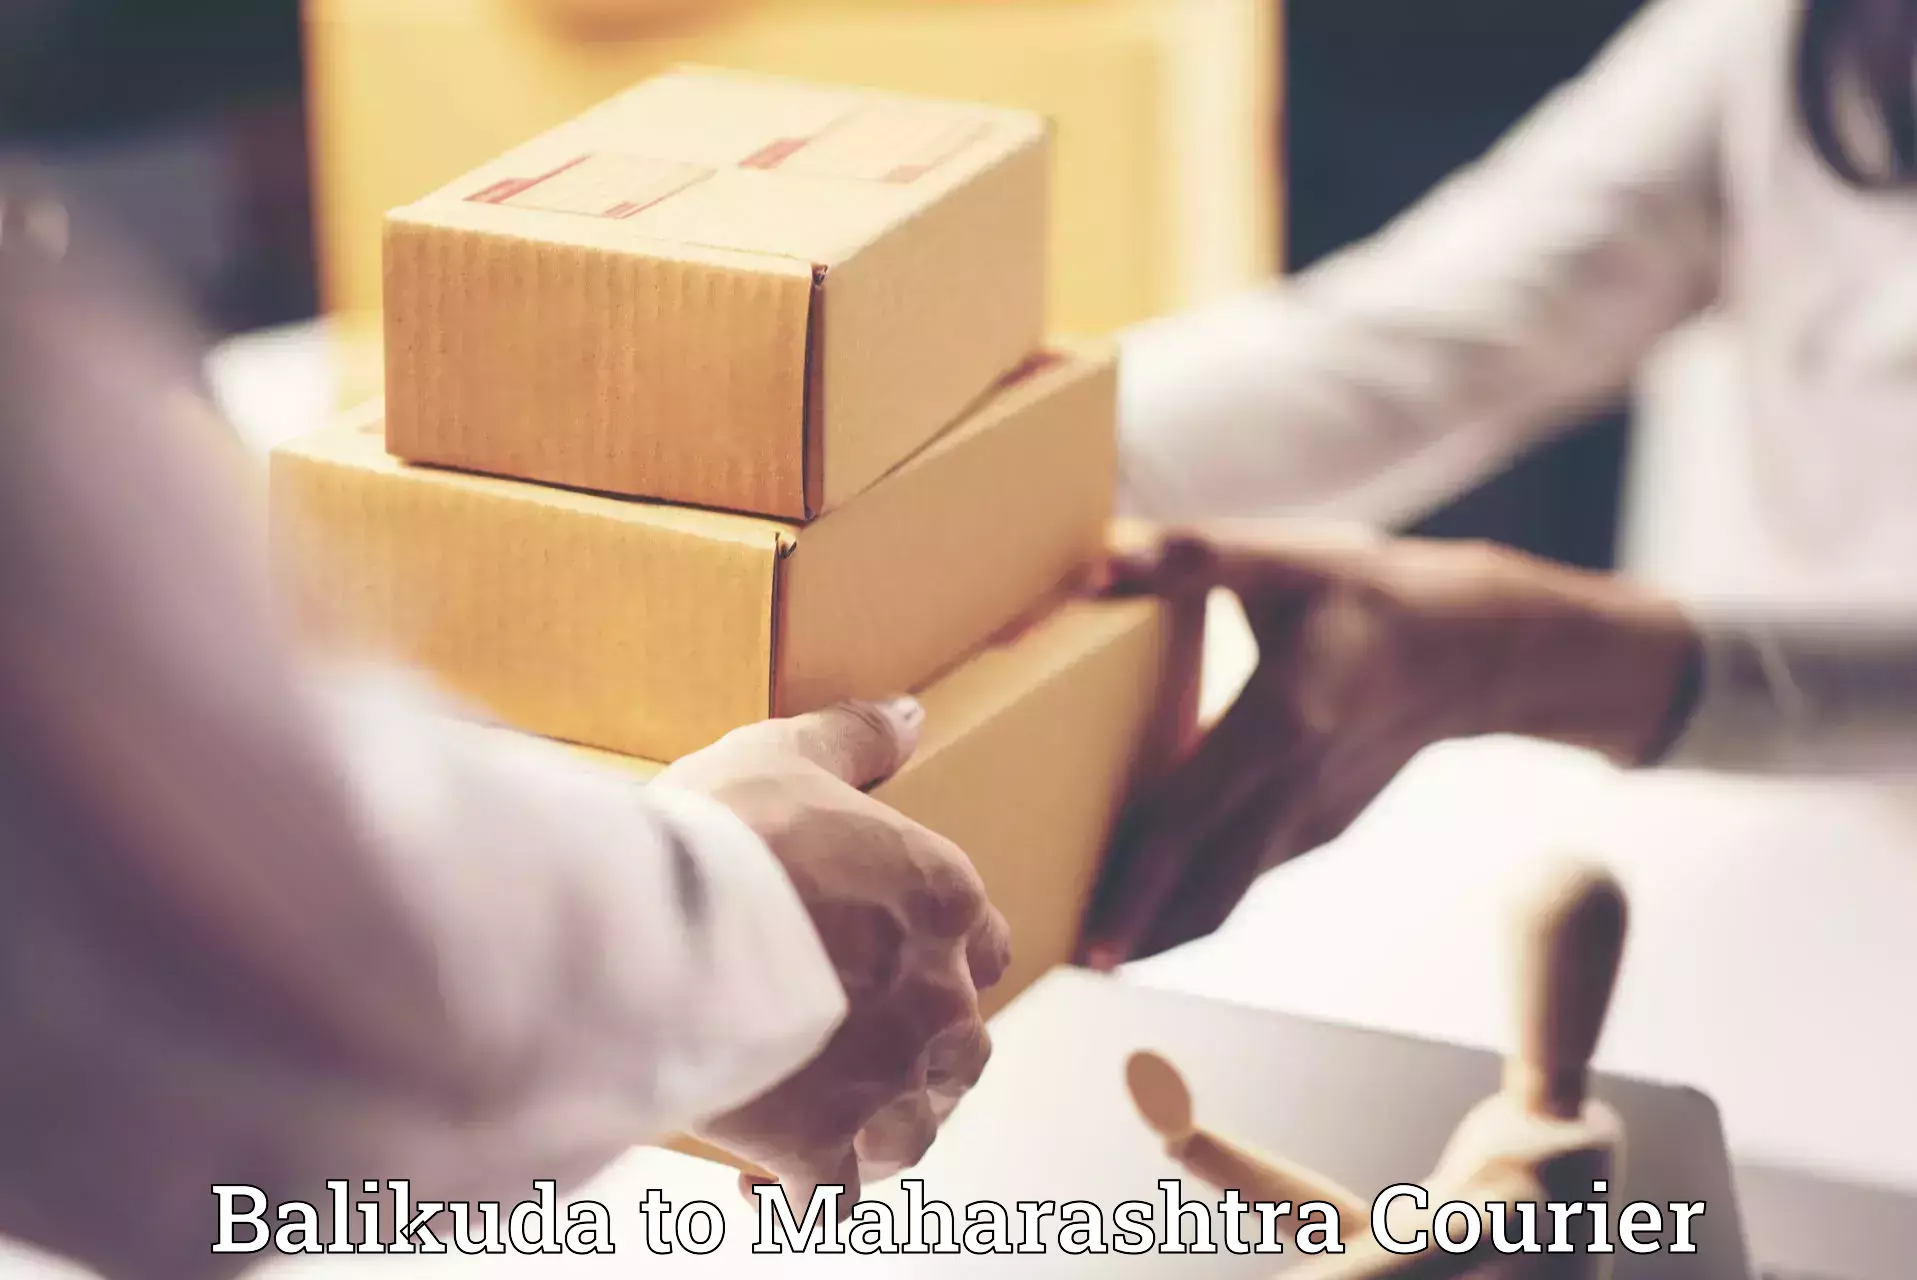 Moving and handling services Balikuda to Maharashtra